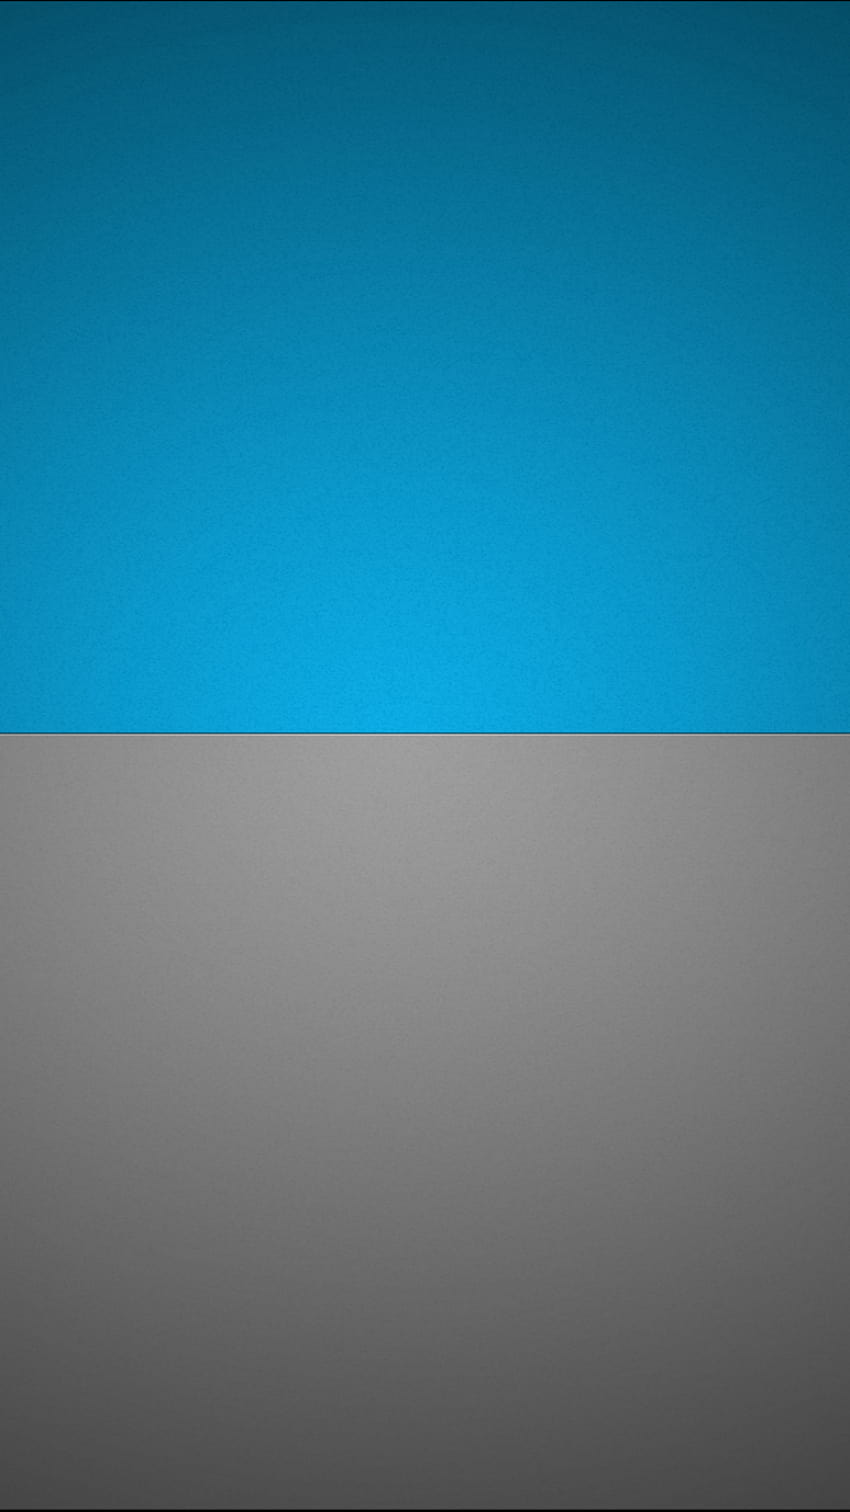 Diseño de s de aplicaciones Android, móvil azul gris. fondo de pantalla del teléfono